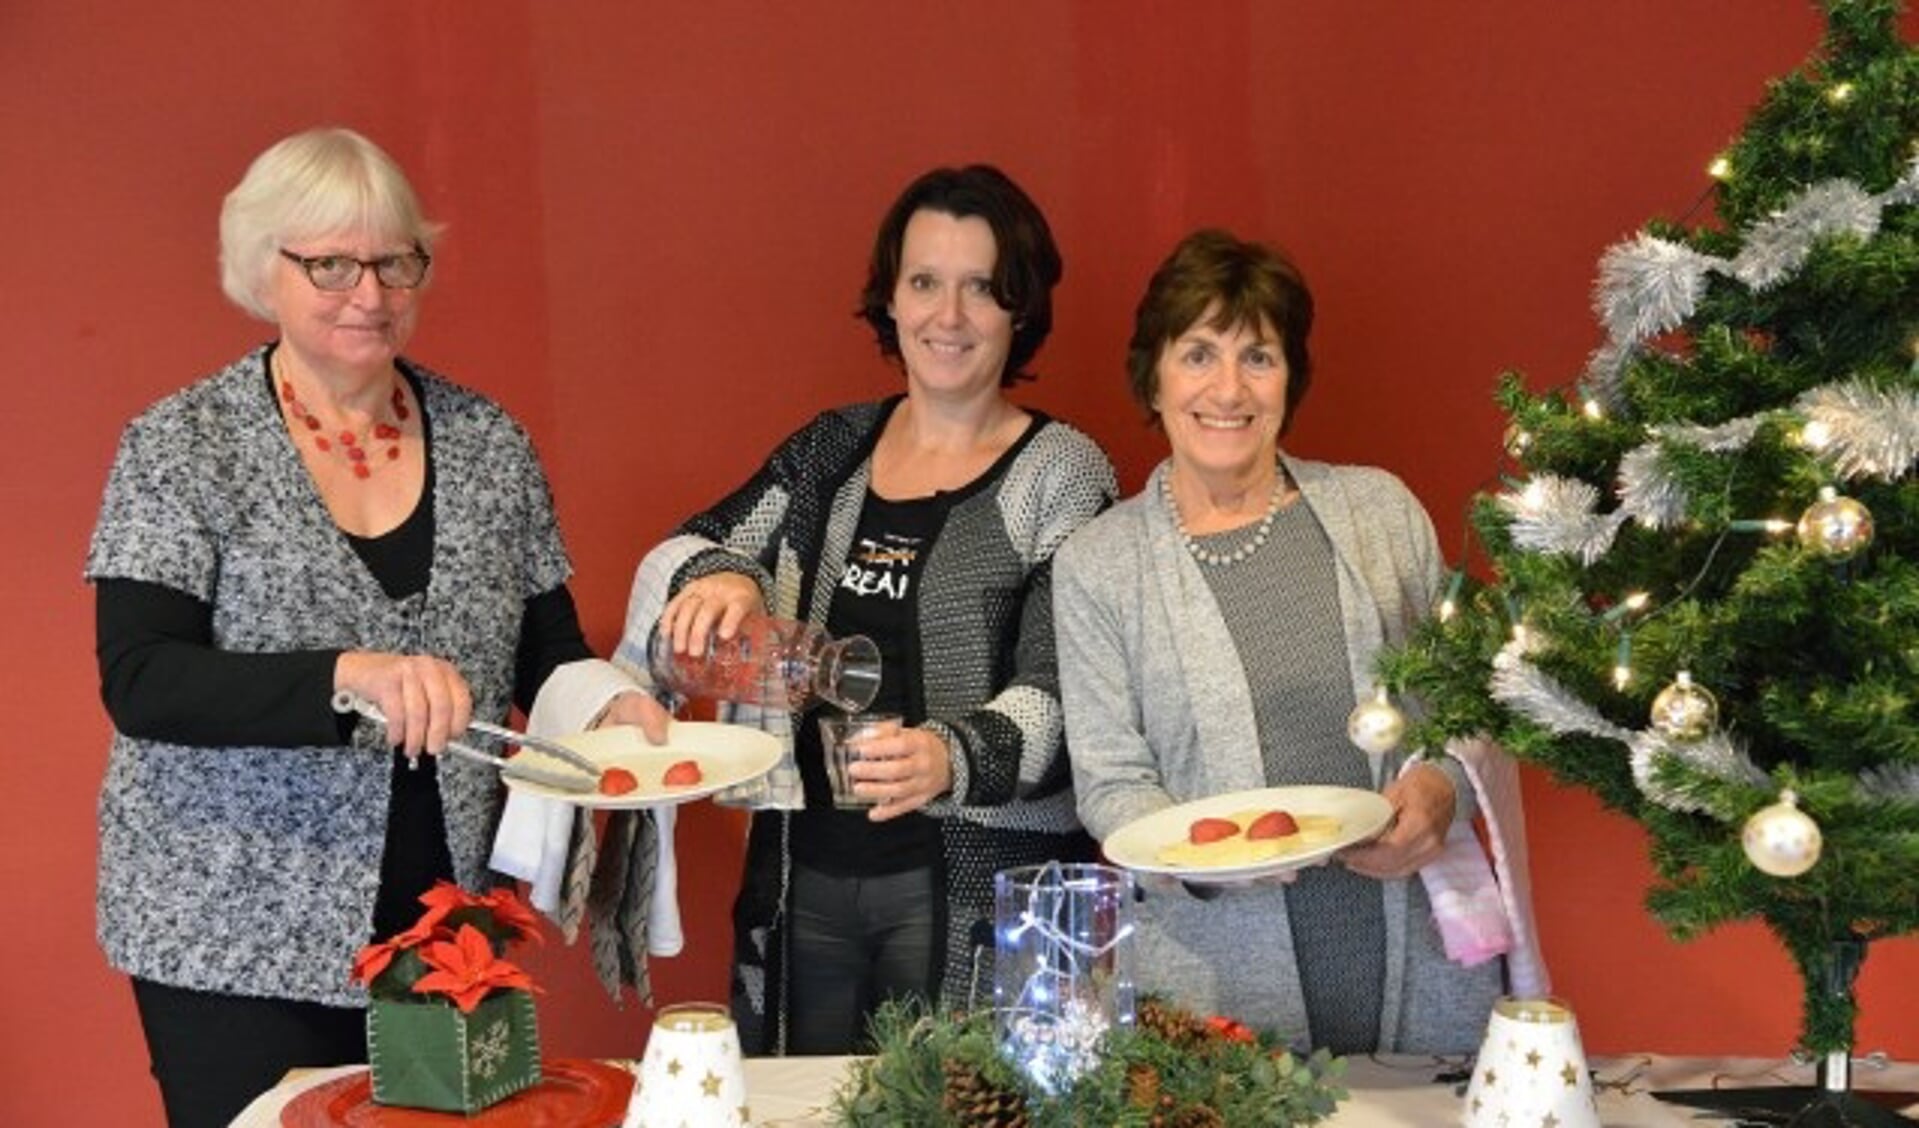 De gastvrouwen tijdens het kerstdiner van de SWOM op maandag 11 december in Linschoten zijn Nel van de Brink, Ruth Vreeswijk en José van Dijk. (Foto: Paul van den Dungen)